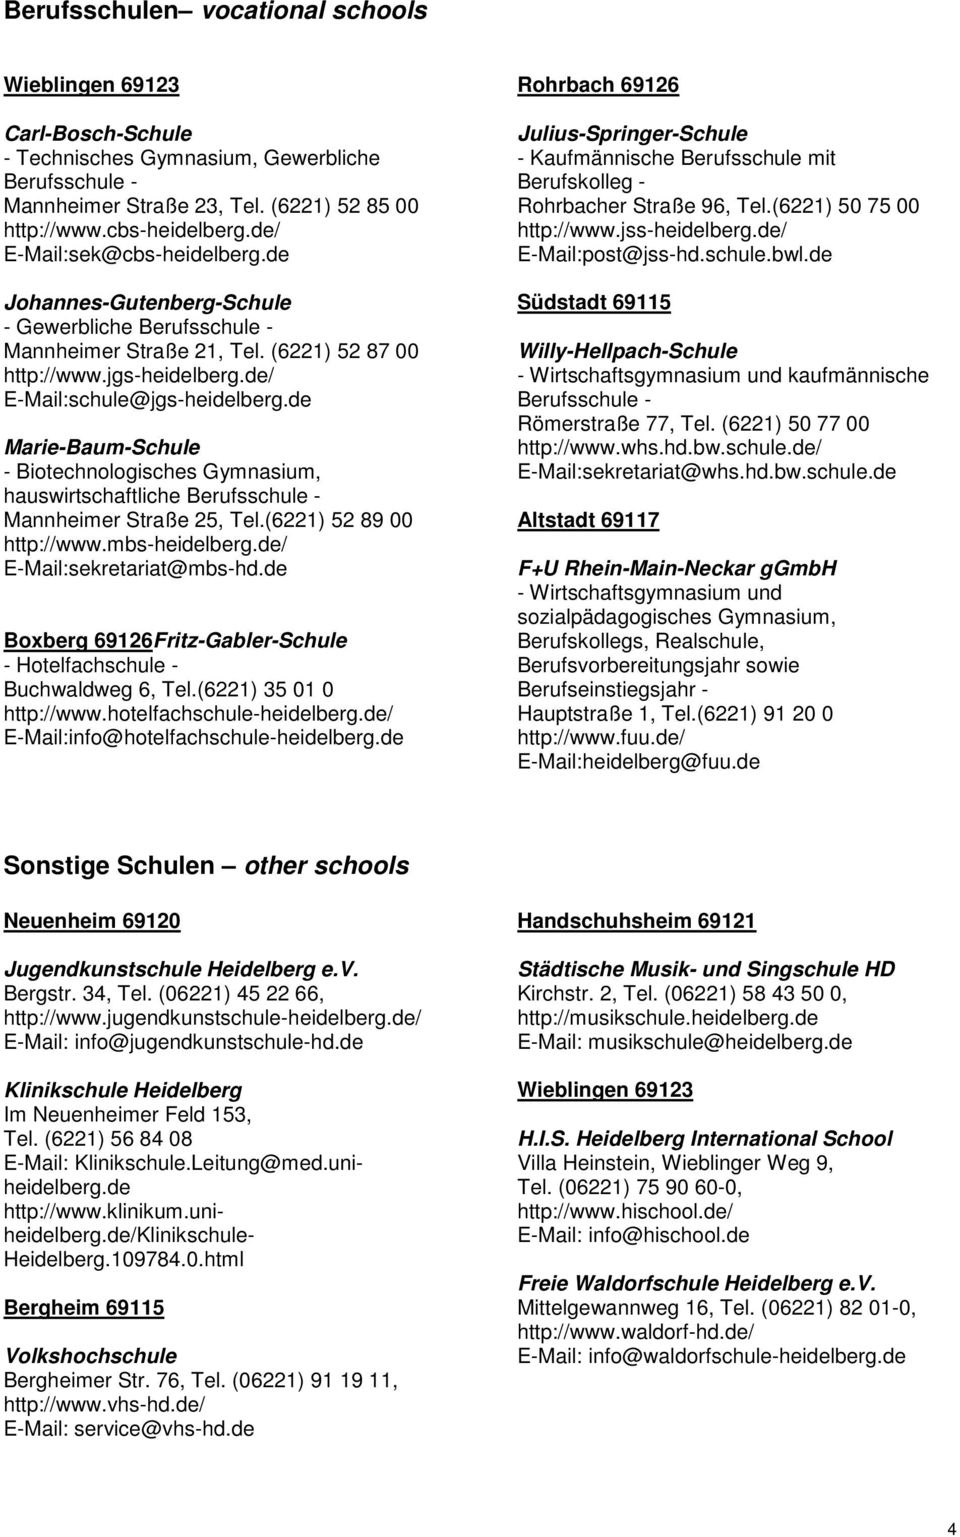 de Marie-Baum-Schule - Biotechnologisches Gymnasium, hauswirtschaftliche Mannheimer Straße 25, Tel.(6221) 52 89 00 http://www.mbs-heidelberg.de/ E-Mail:sekretariat@mbs-hd.